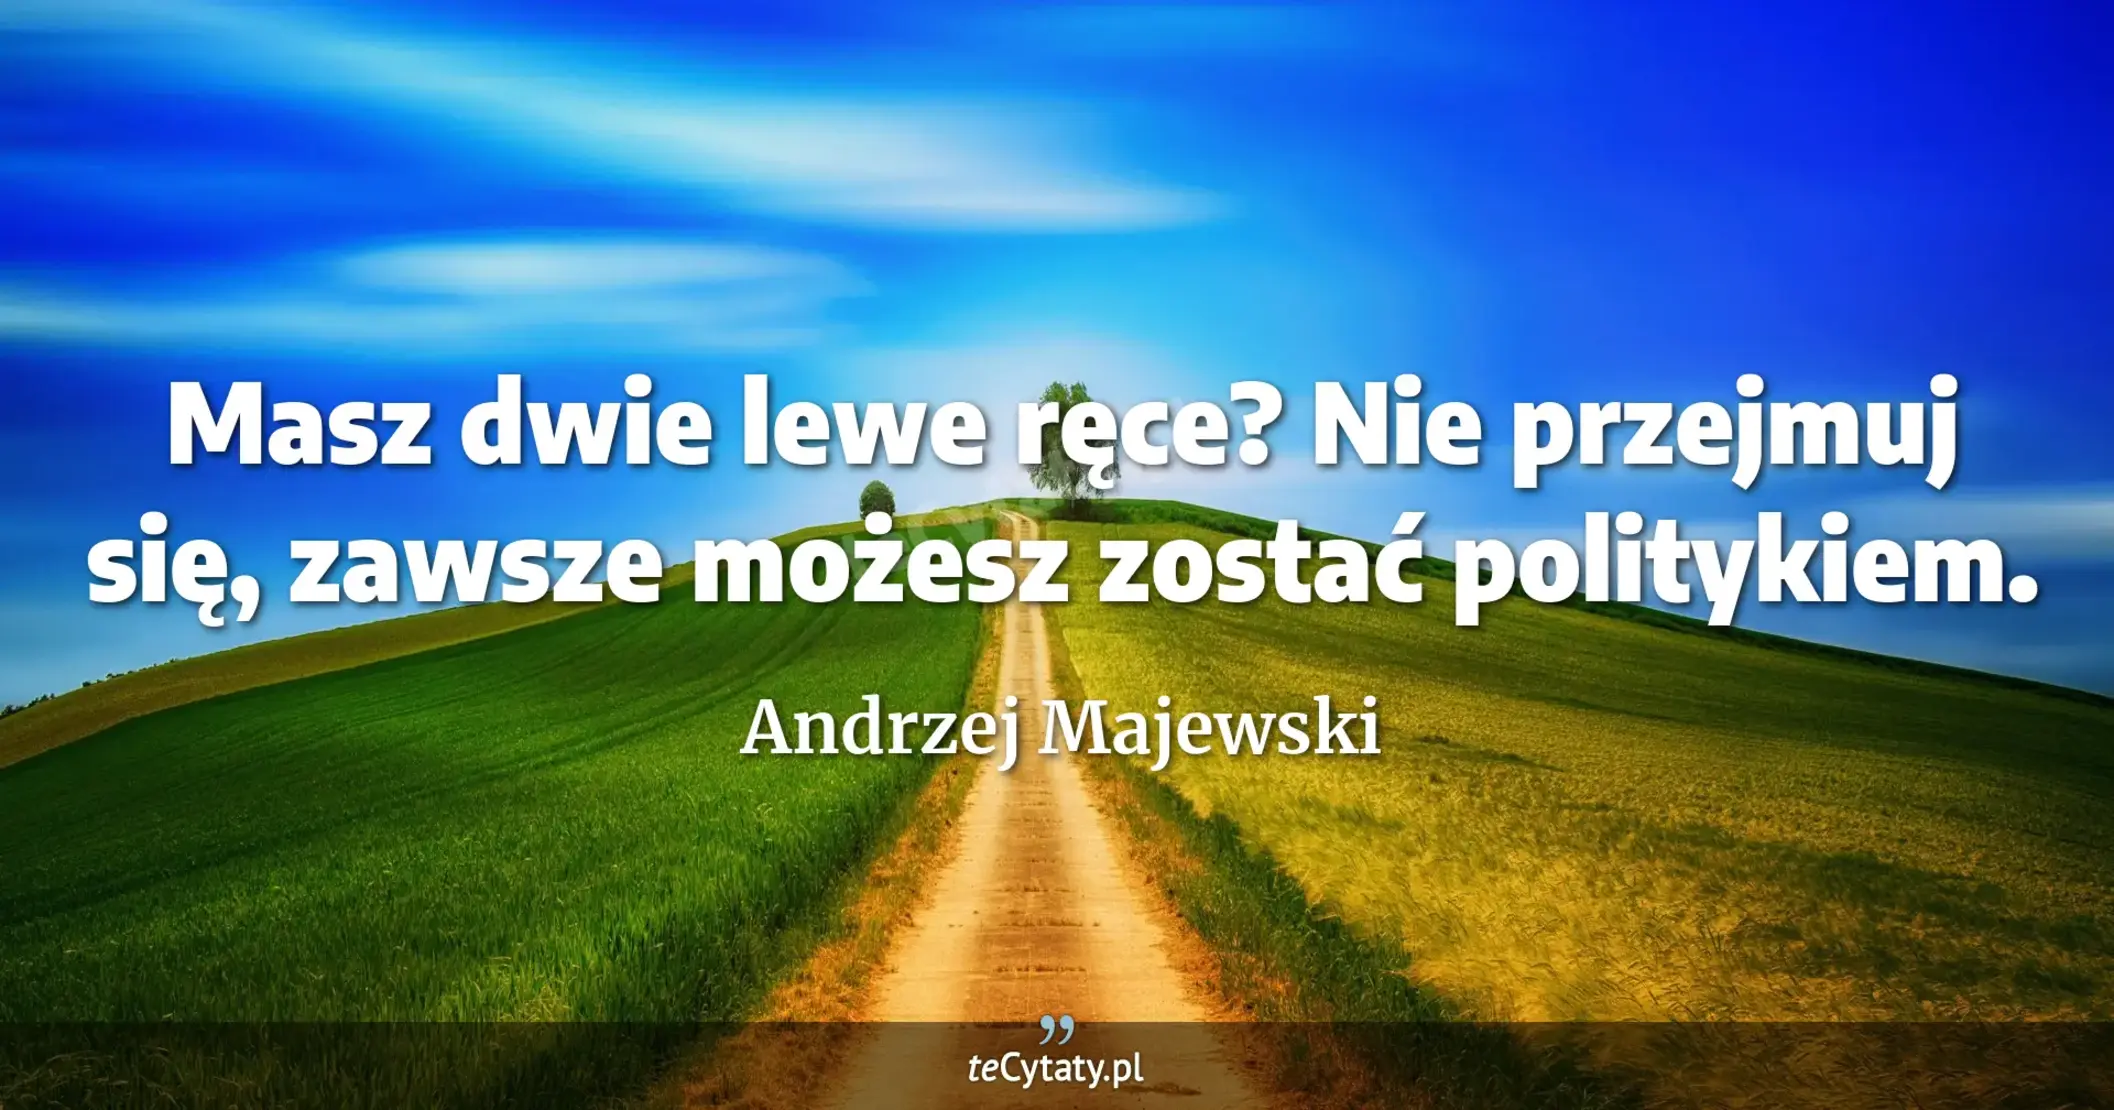 Masz dwie lewe ręce? Nie przejmuj się, zawsze możesz zostać politykiem. - Andrzej Majewski